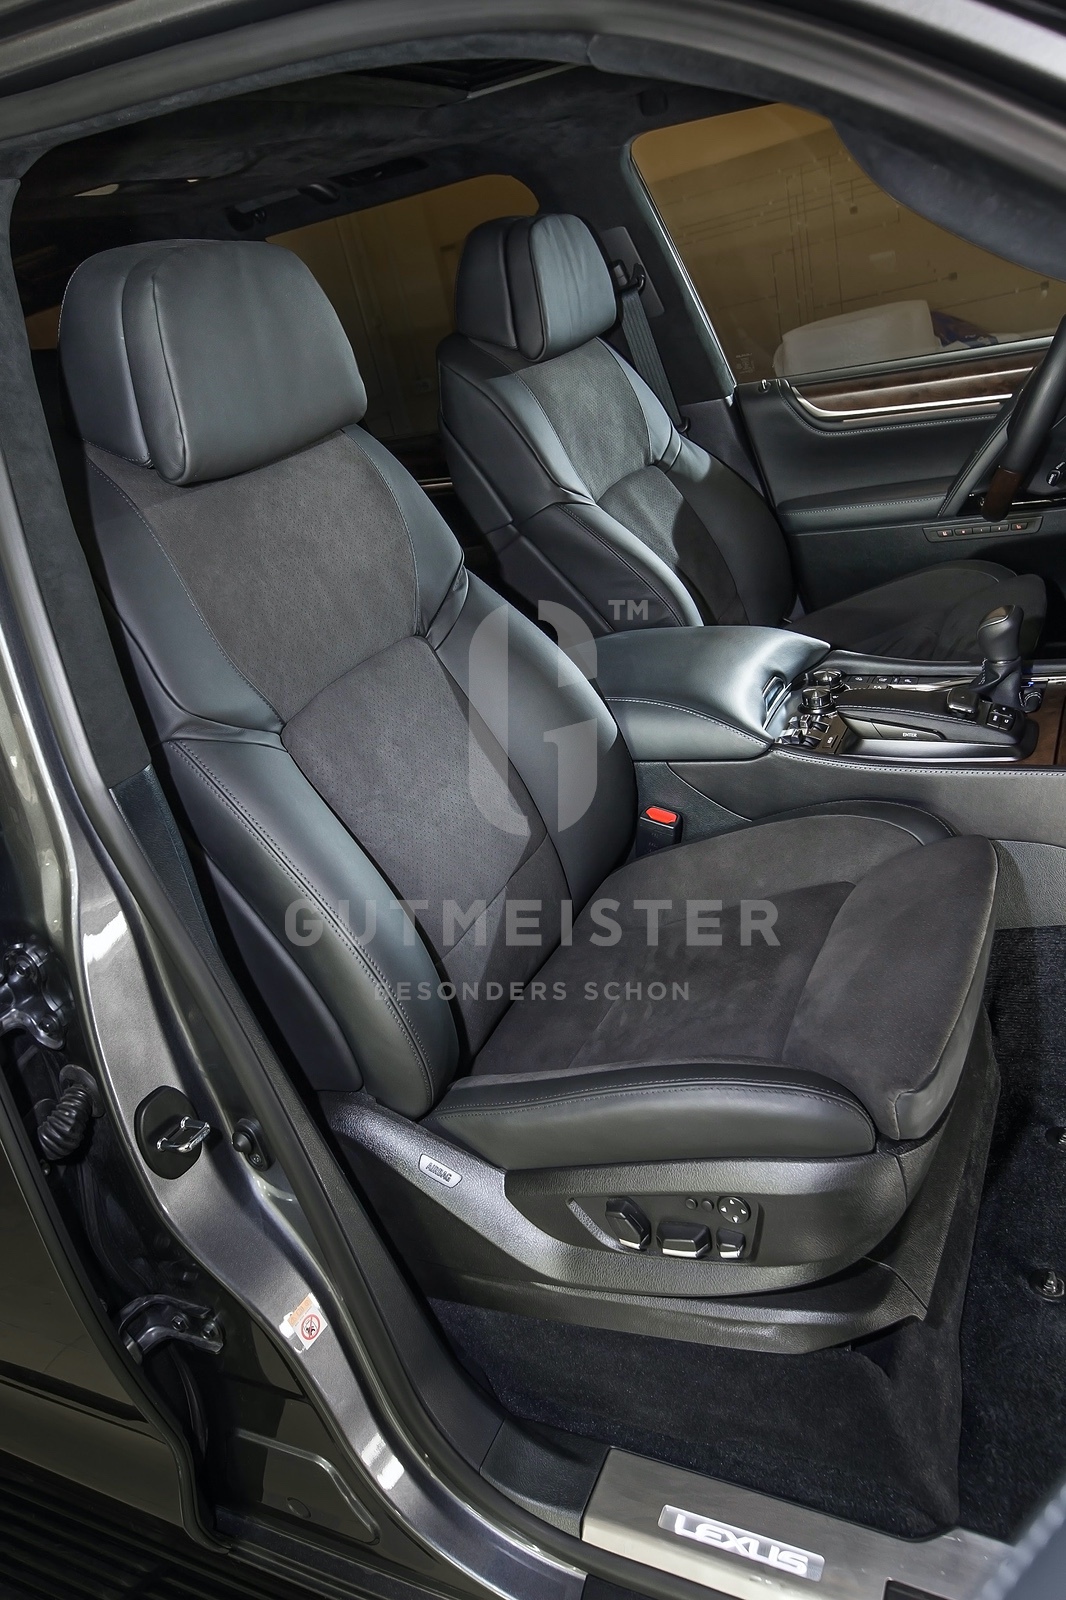 Комфортные кресла BMW F02 for Lexus LX 570